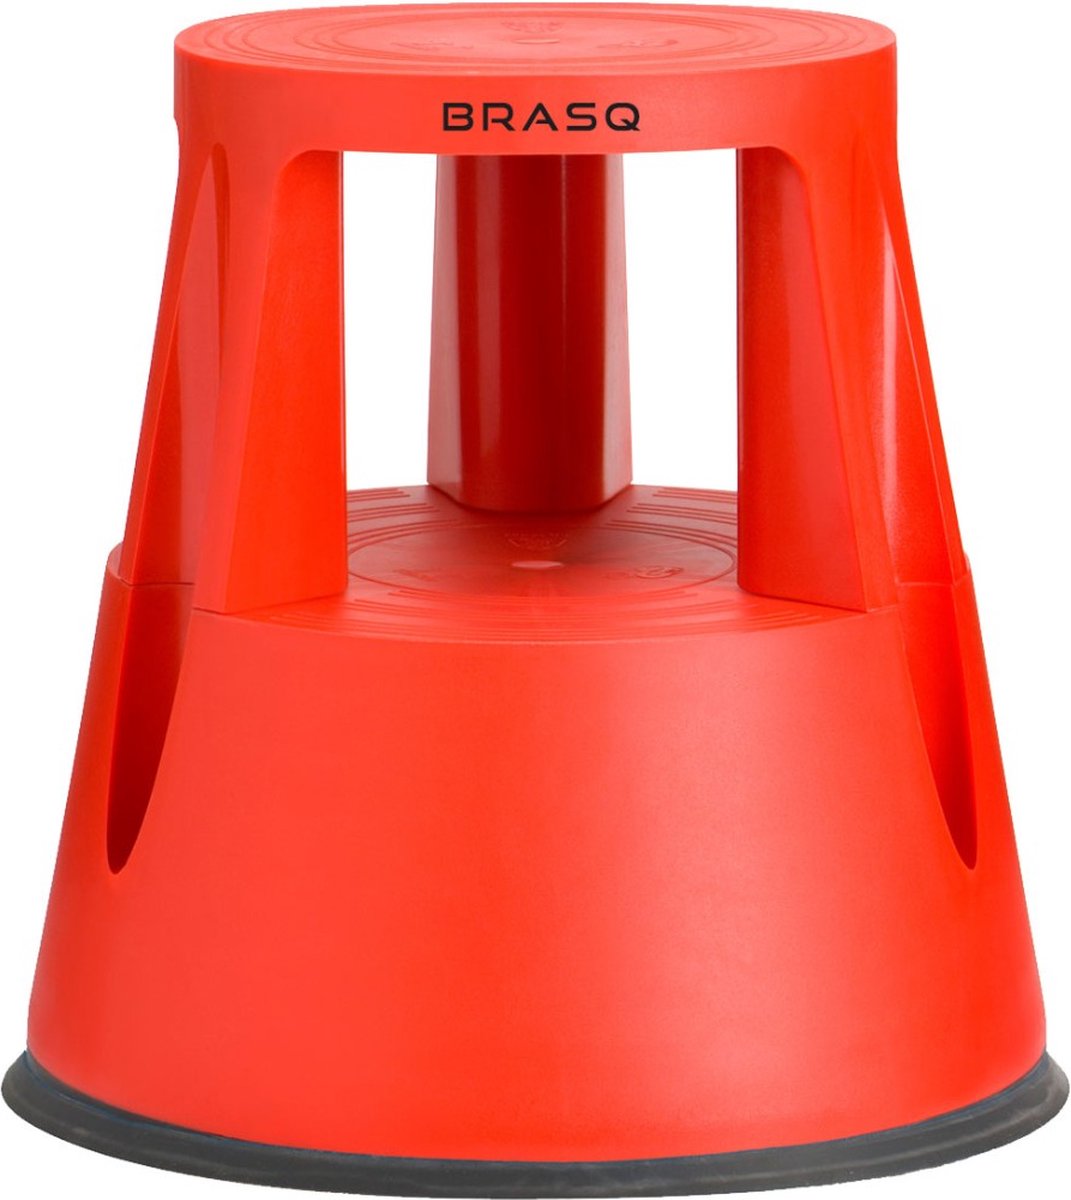 BRASQ Opstapkrukje Comfort Rood hoogwaardig kunststof ST200, draagvermogen 150 kg, opstapkruk, olifantenvoet, kantoorkruk, trap, roltrap, kruk